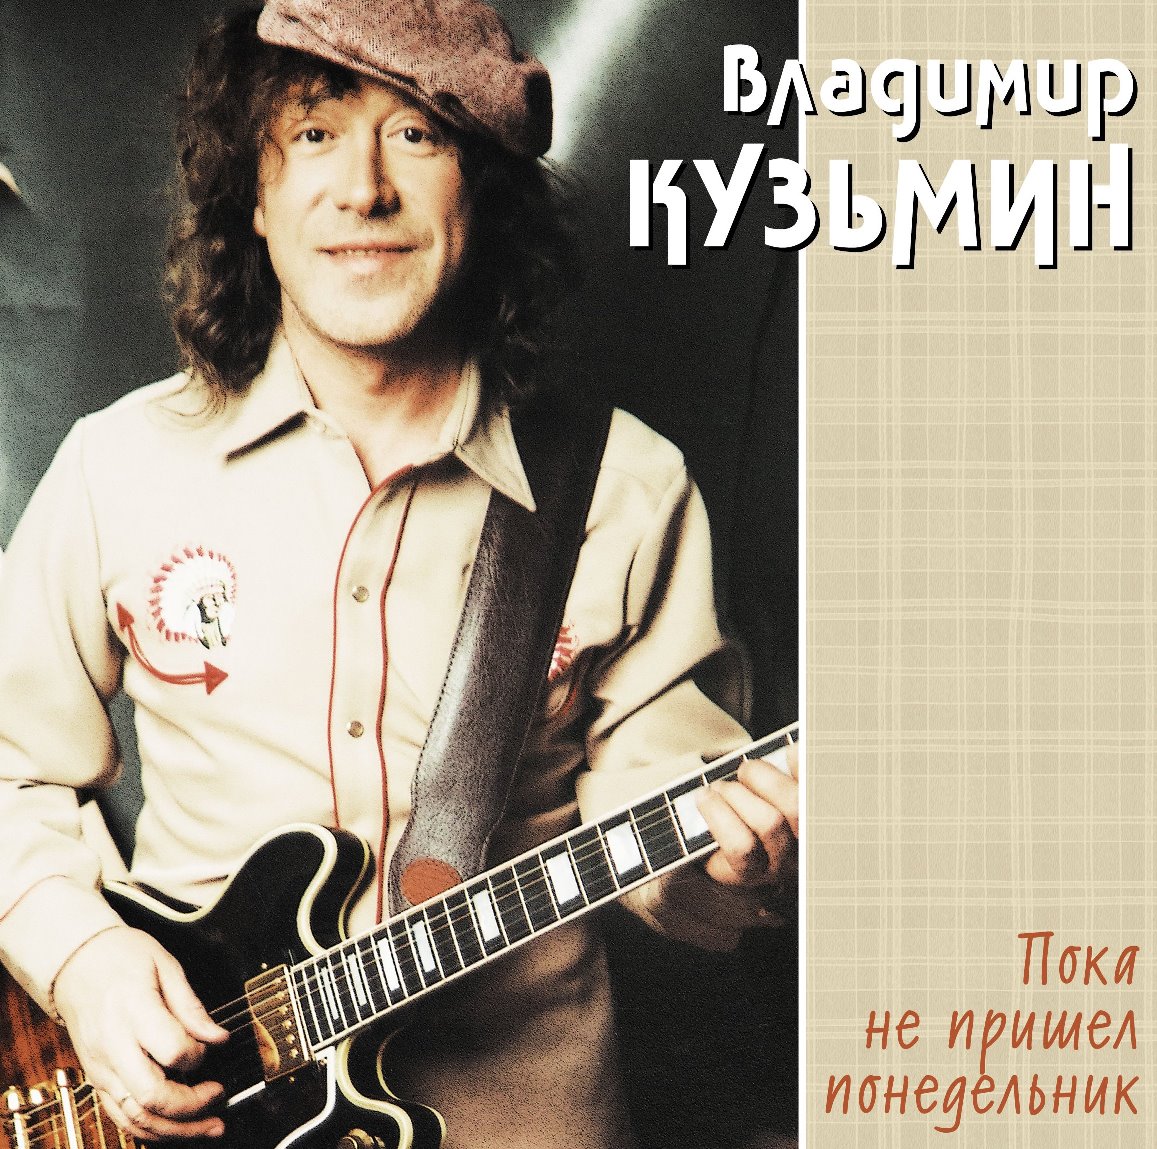 Владимир Кузьмин Пока Не Пришел Понедельник (Cream) (LP)